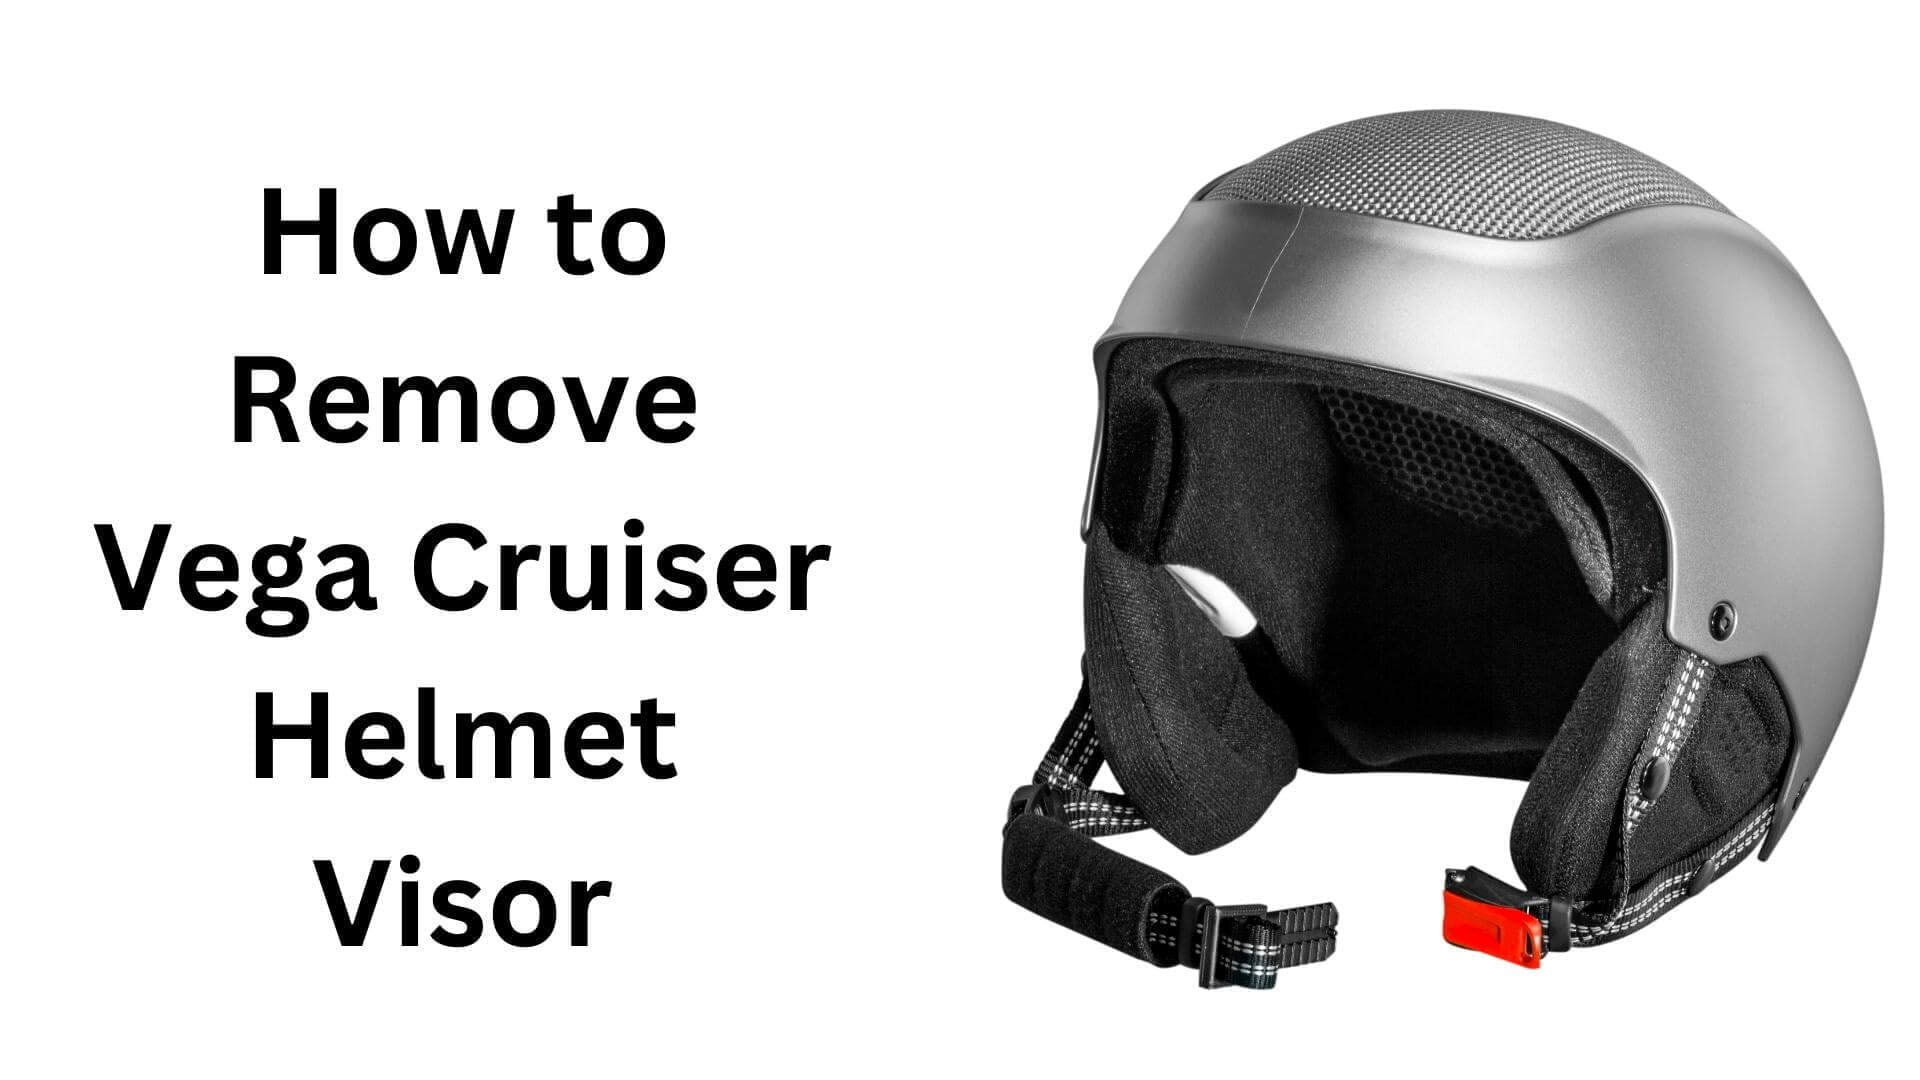 How to Remove Vega Cruiser Helmet Visor?